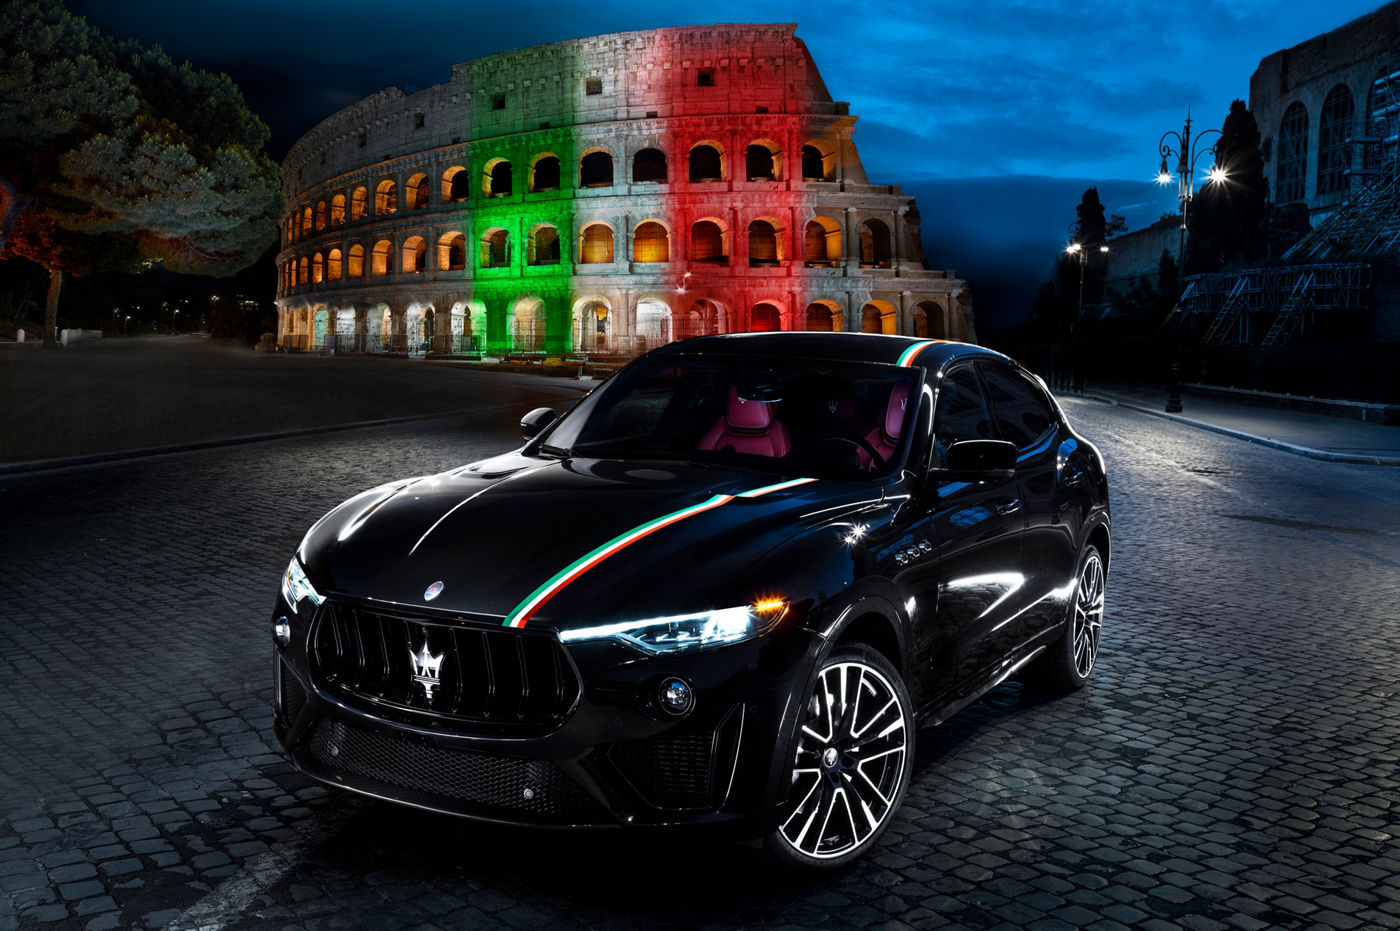 Maserati Levante Trofeo mit italienischem Trikolore Streifen vor dem Kolosseum in Rom, Seitenansicht